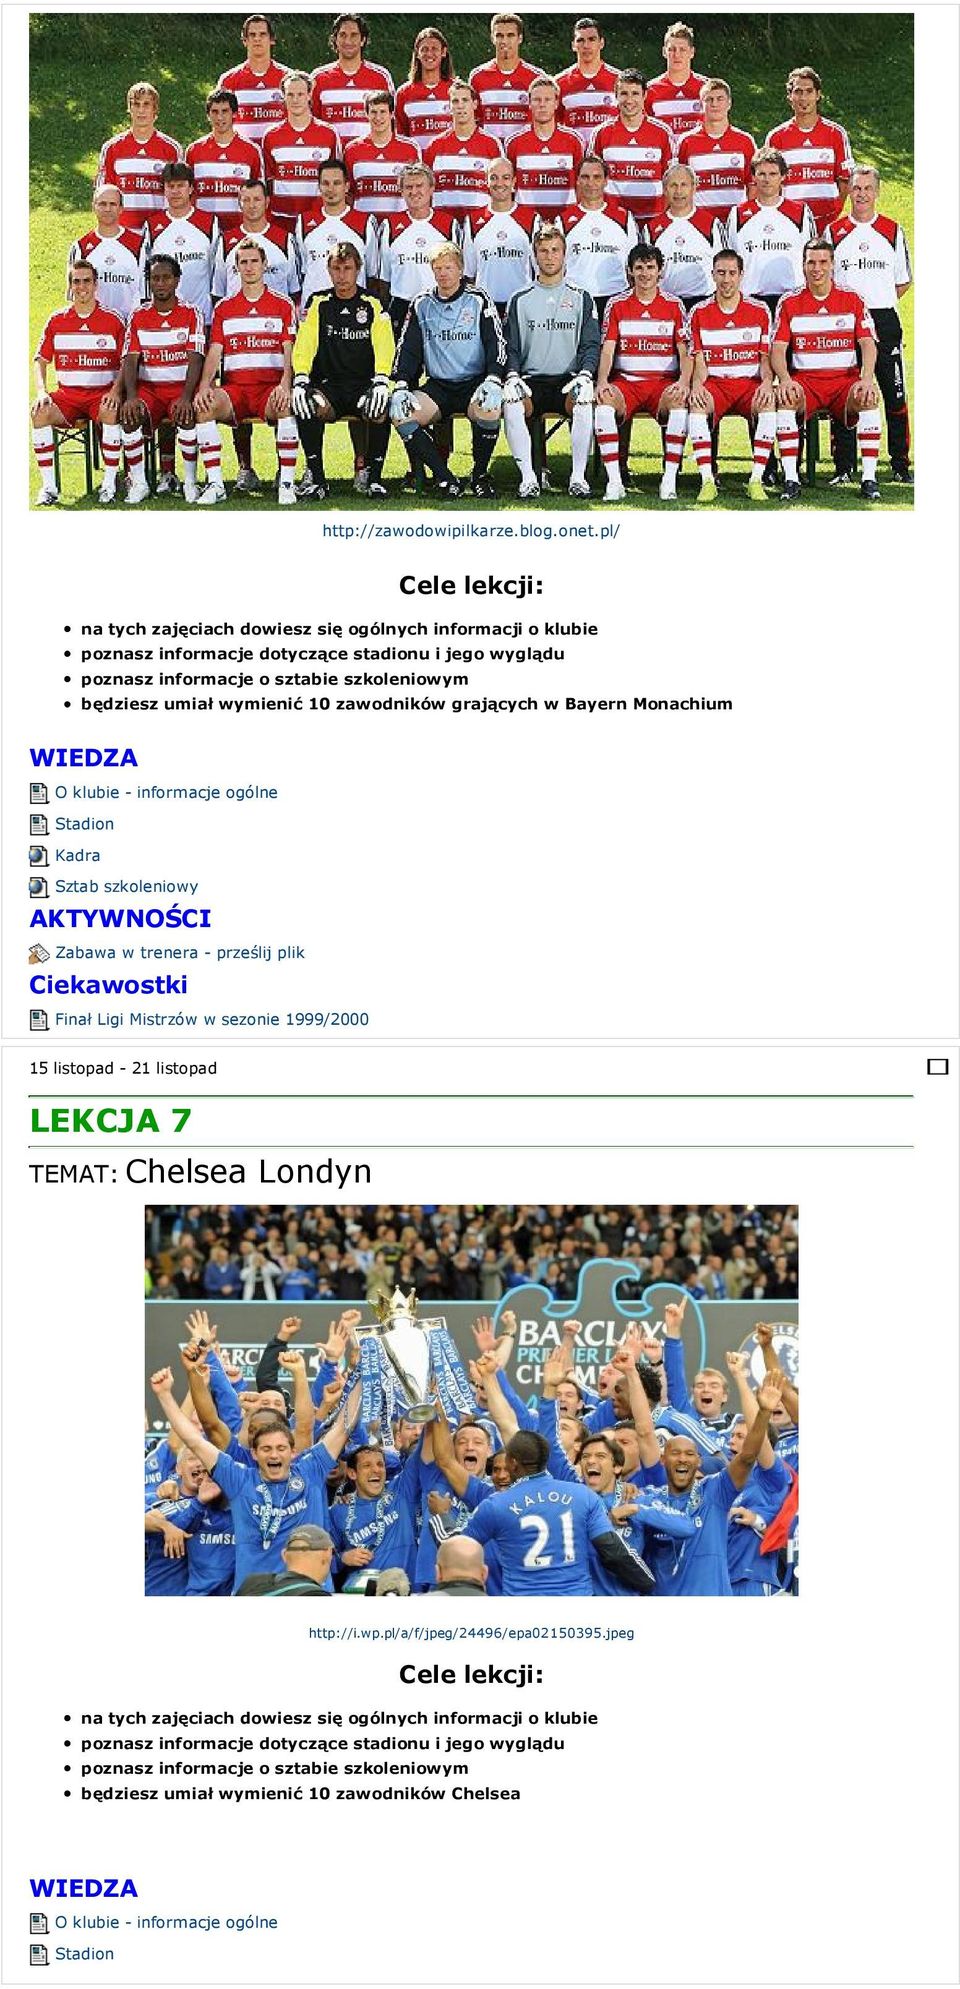 plik Finał Ligi Mistrzów w sezonie 1999/2000 15 listopad - 21